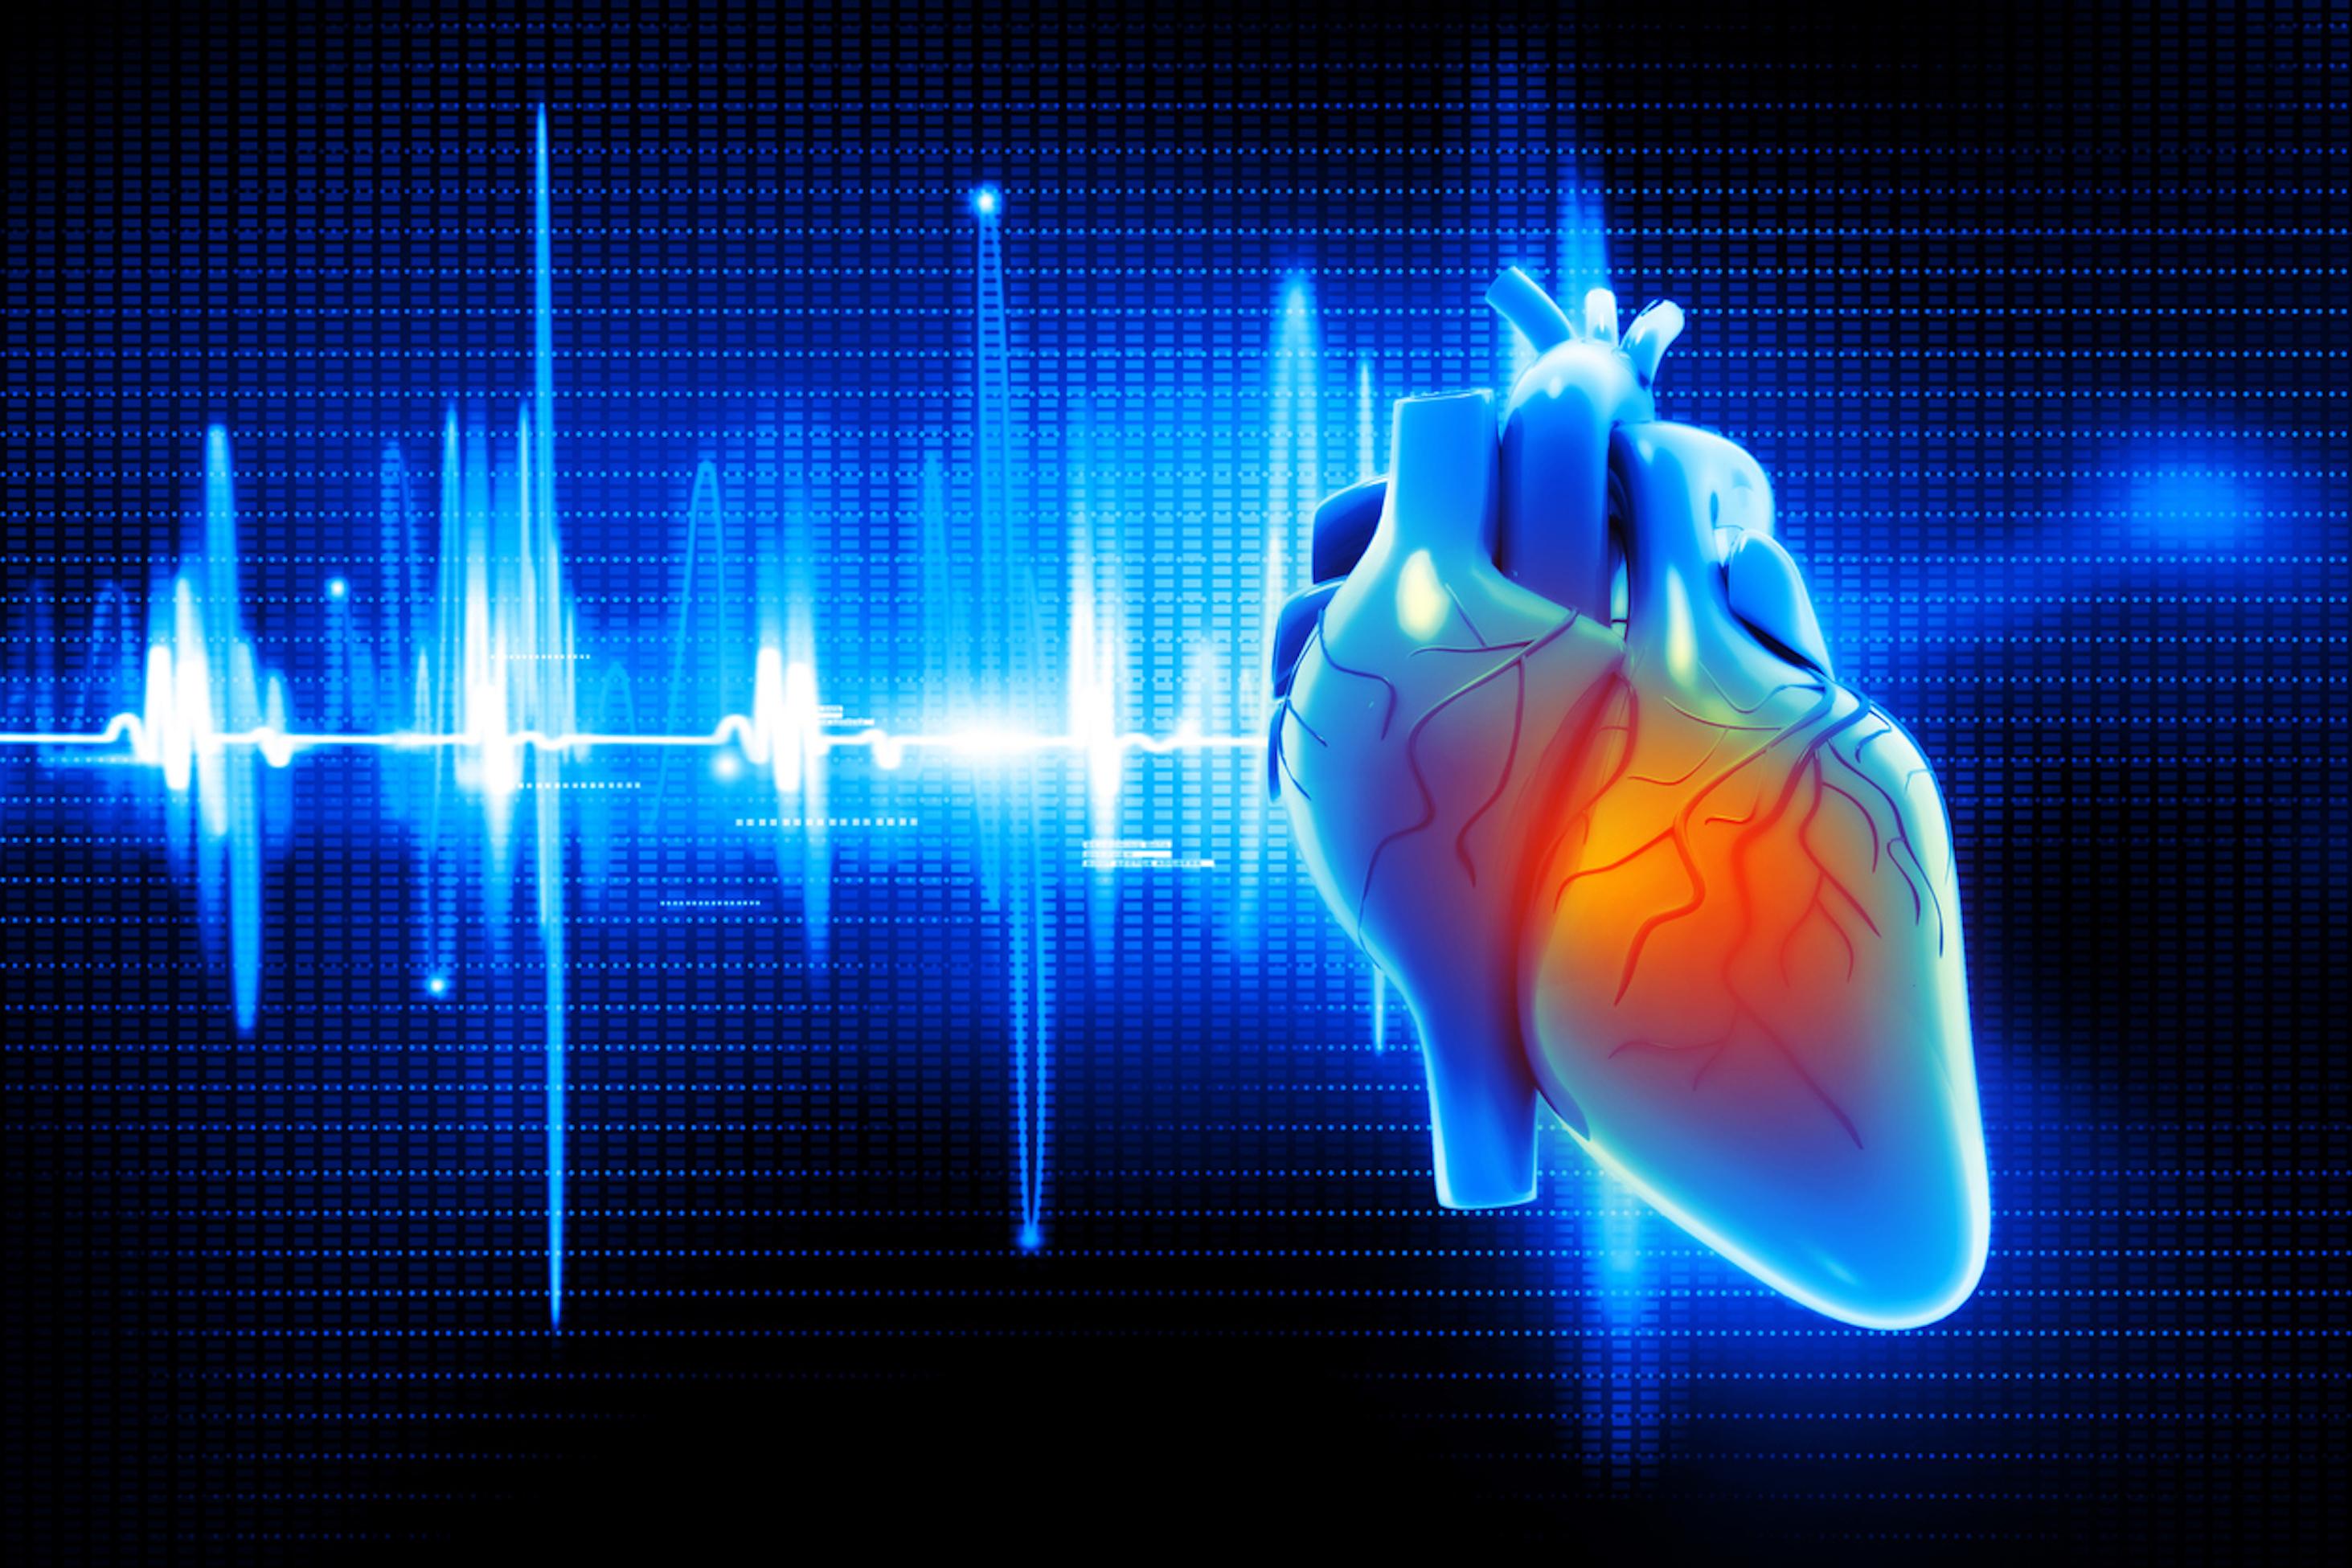 Risque cardiovasculaire : un traitement hormonal à la ménopause diminue ce risque